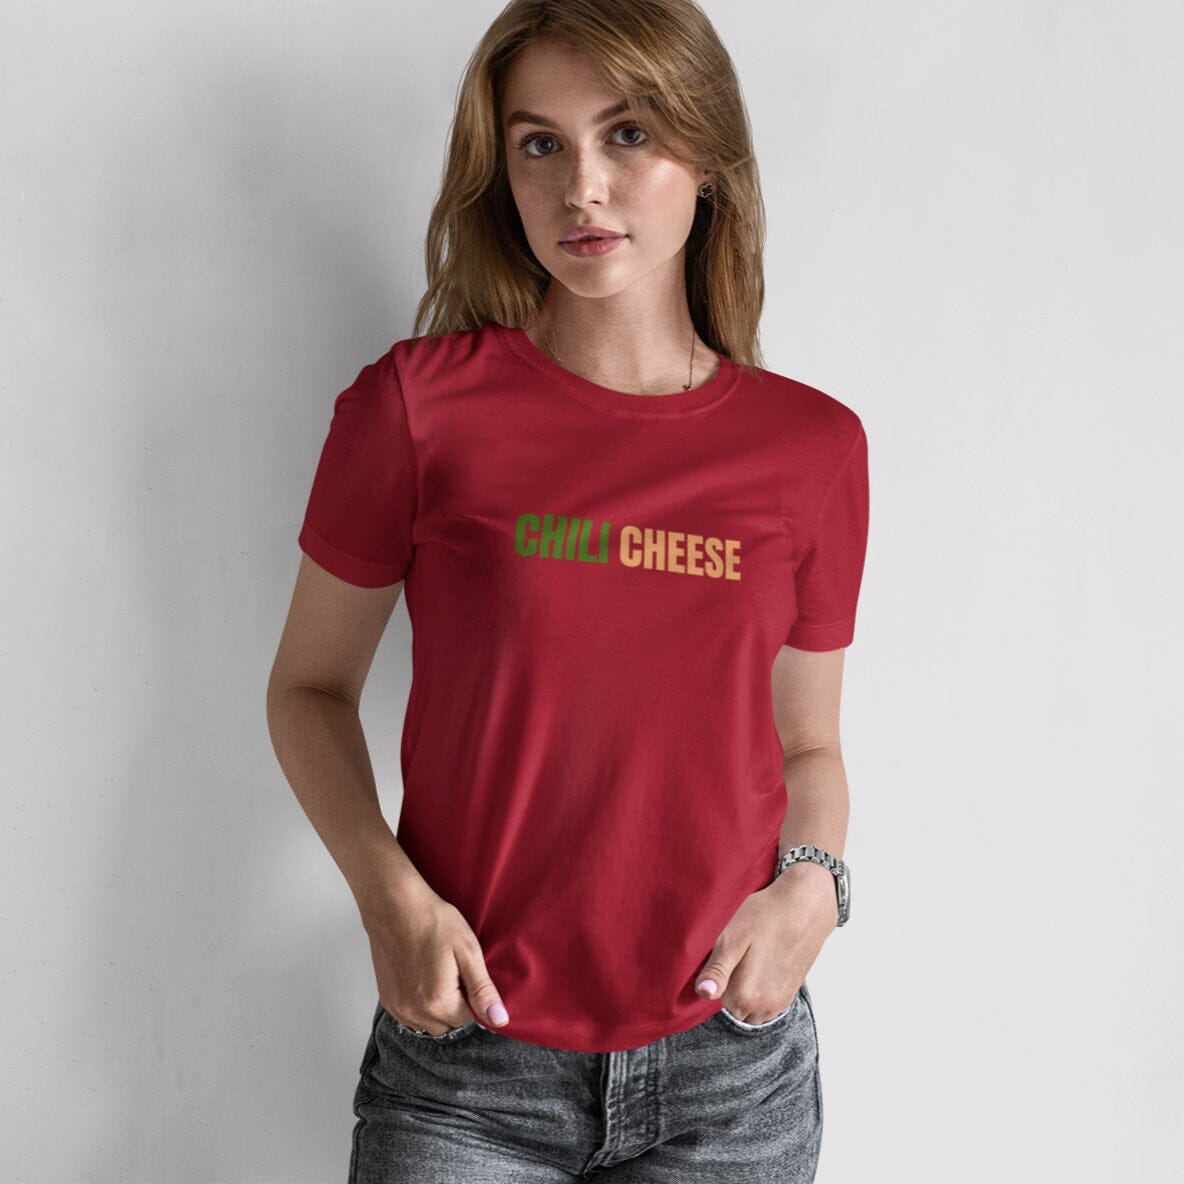 Chili Cheese- T-shirt 